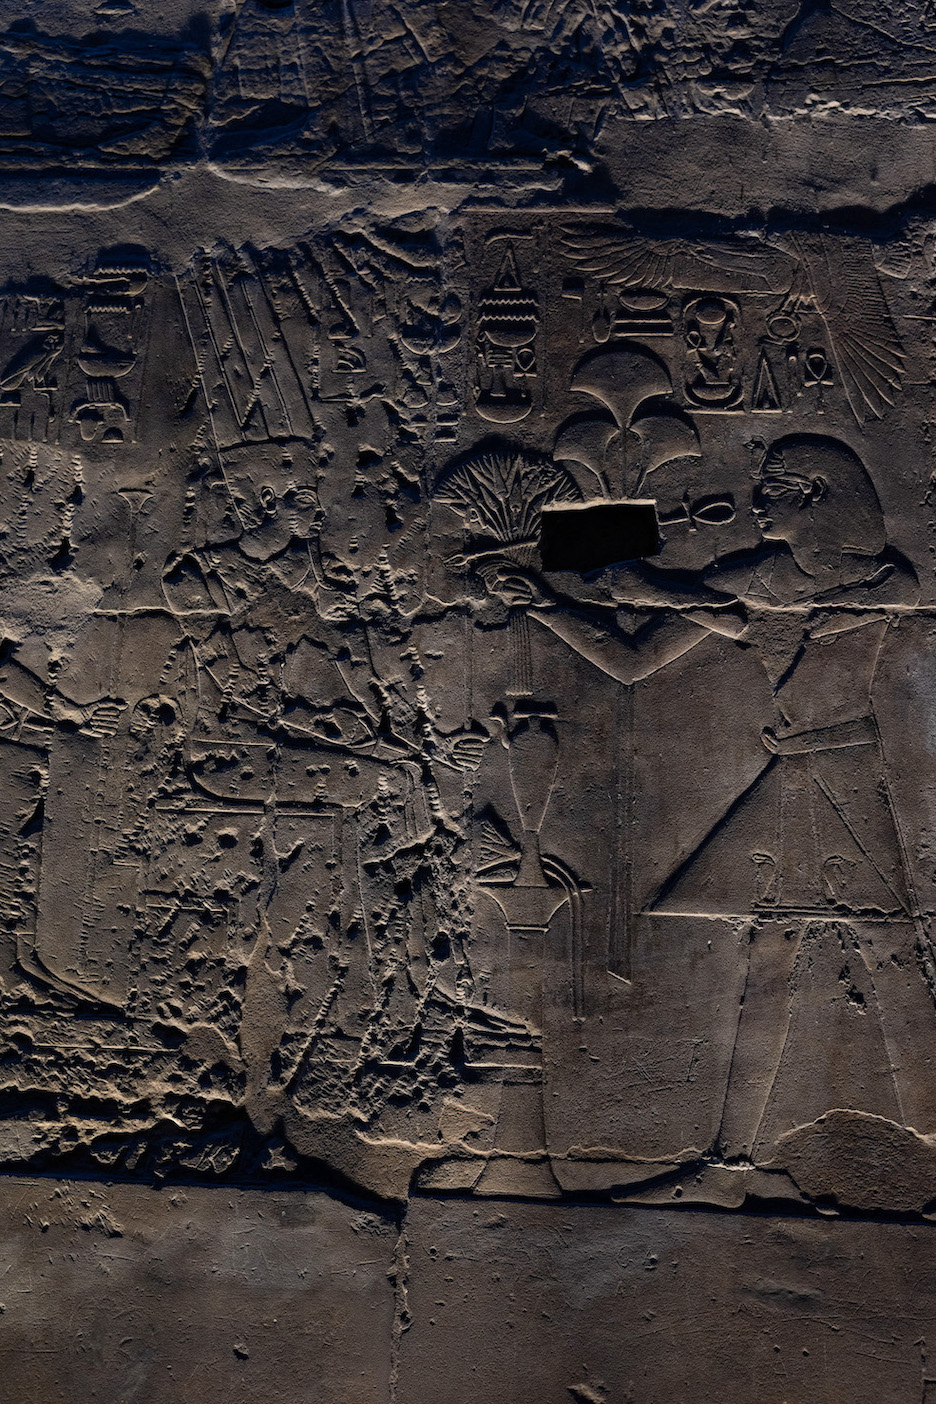 Reiseziele Ägypten Tempel Luxortempel Luxor Sehenswürdigkeiten Geschichte